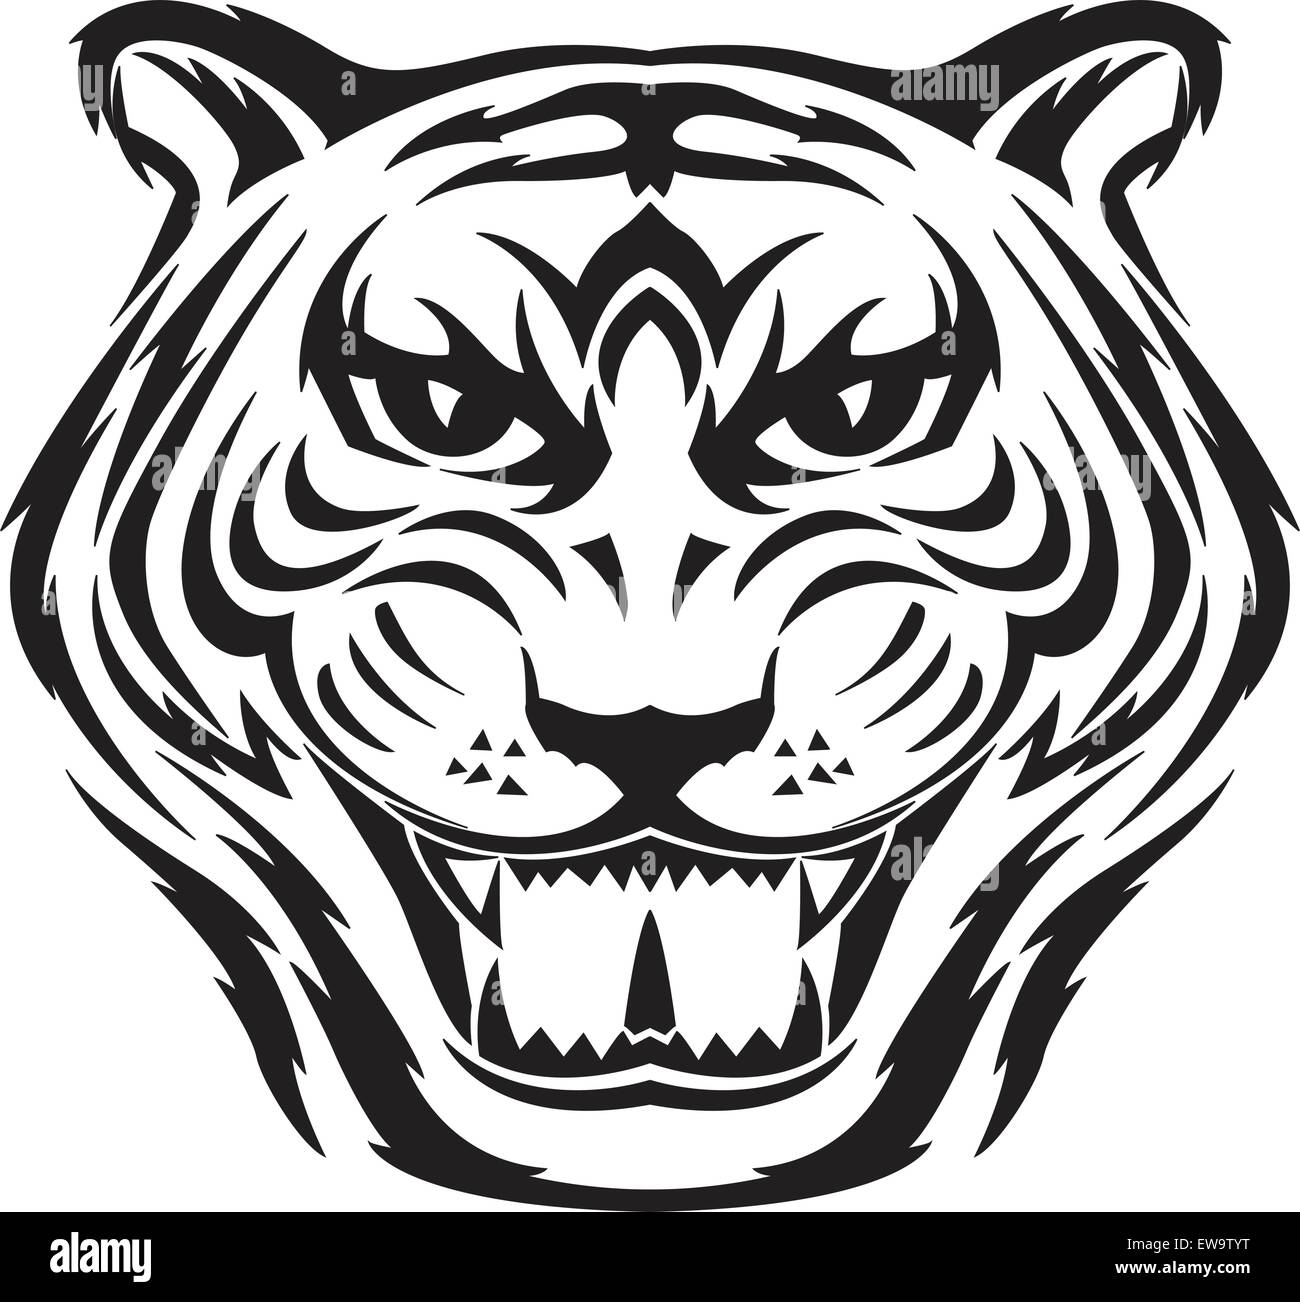 Tiger face tattoo design, vintage engraved illustration Stock Vector Image  & Art - Alamy